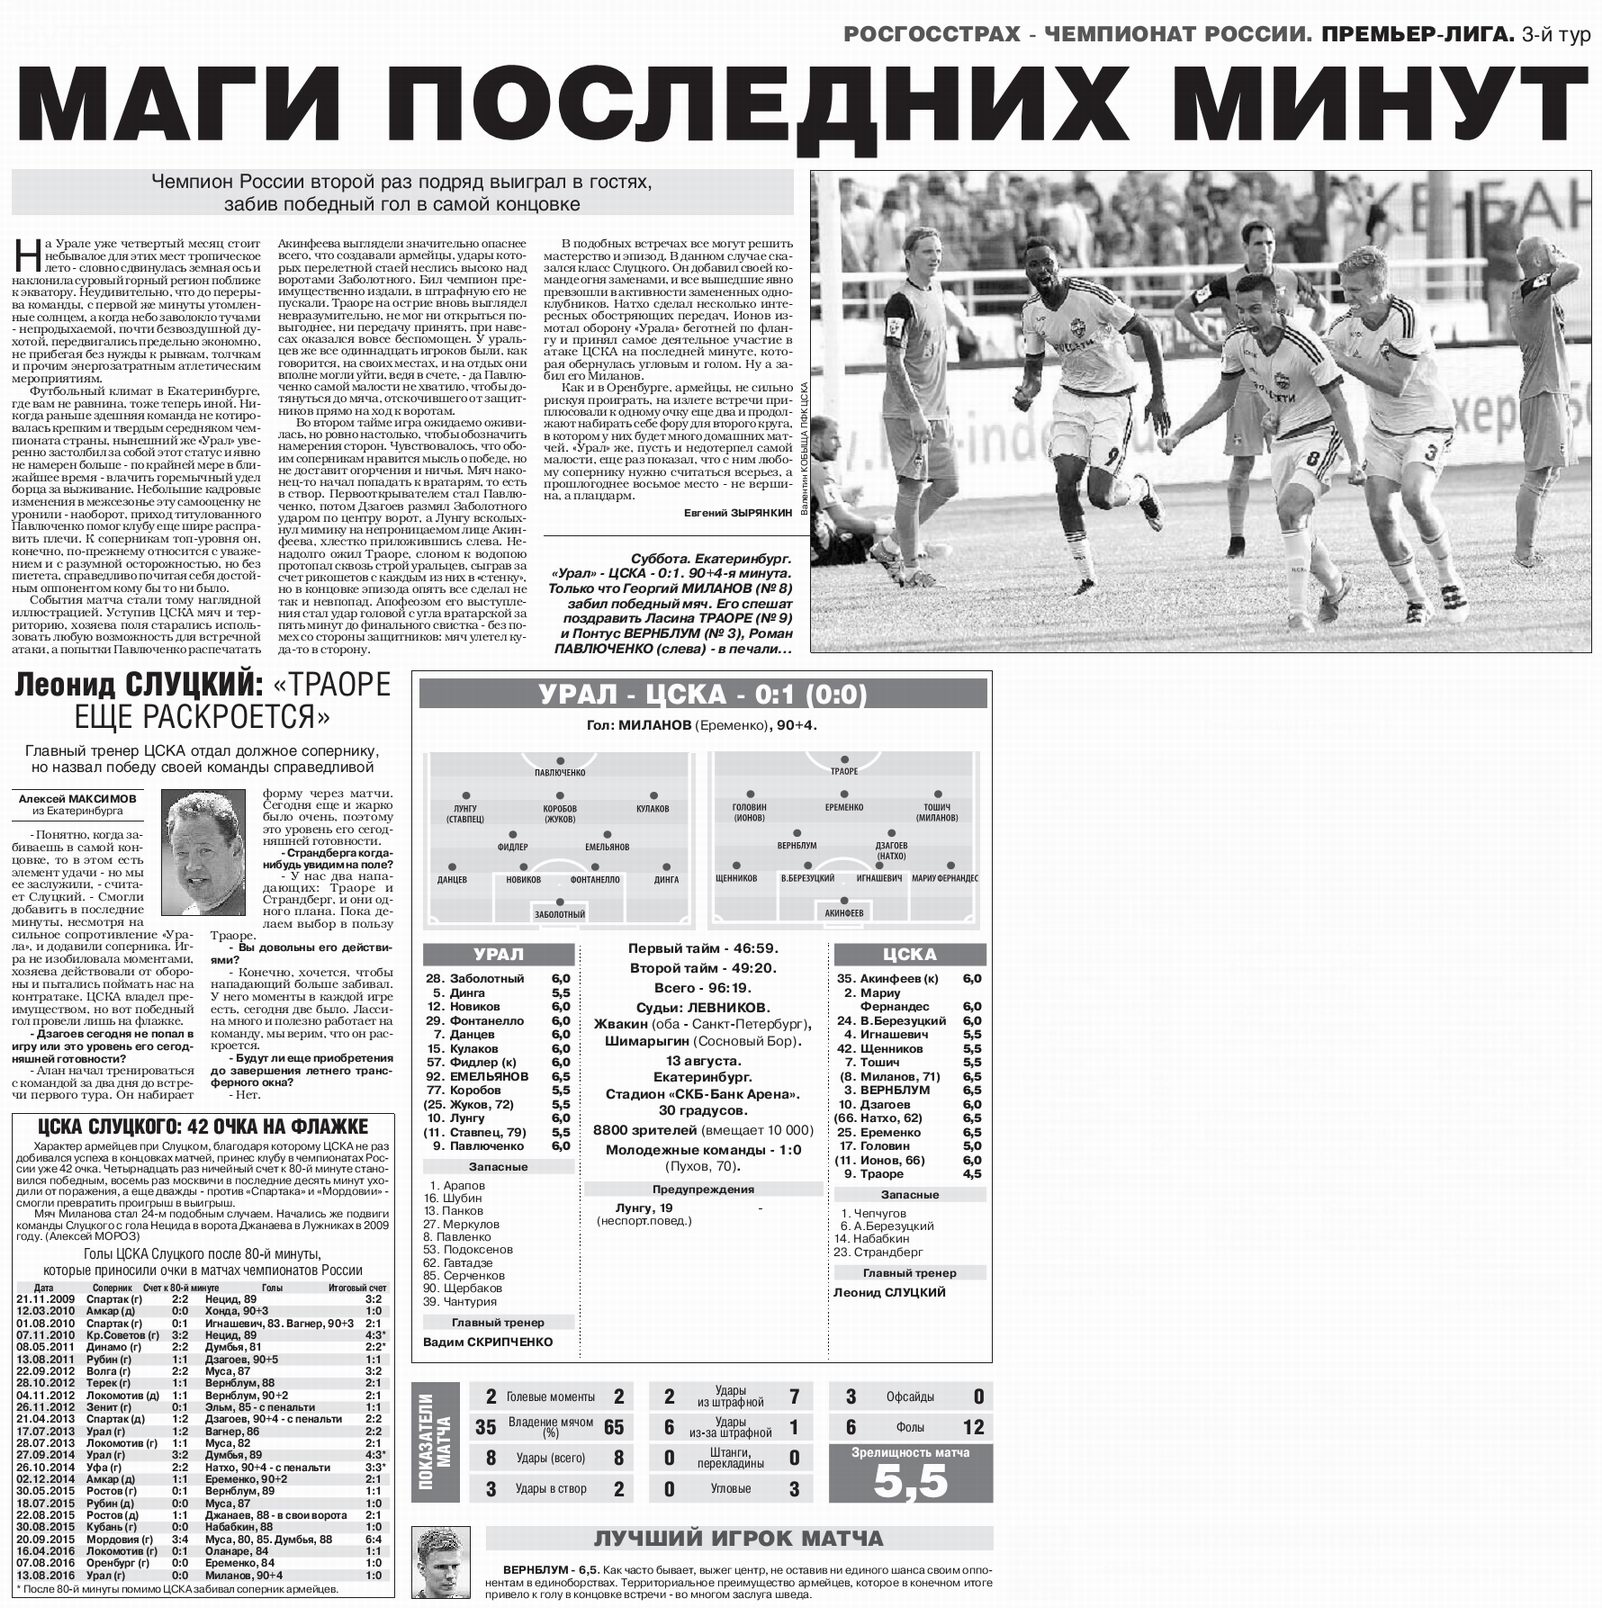 2016-08-13.Ural-CSKA